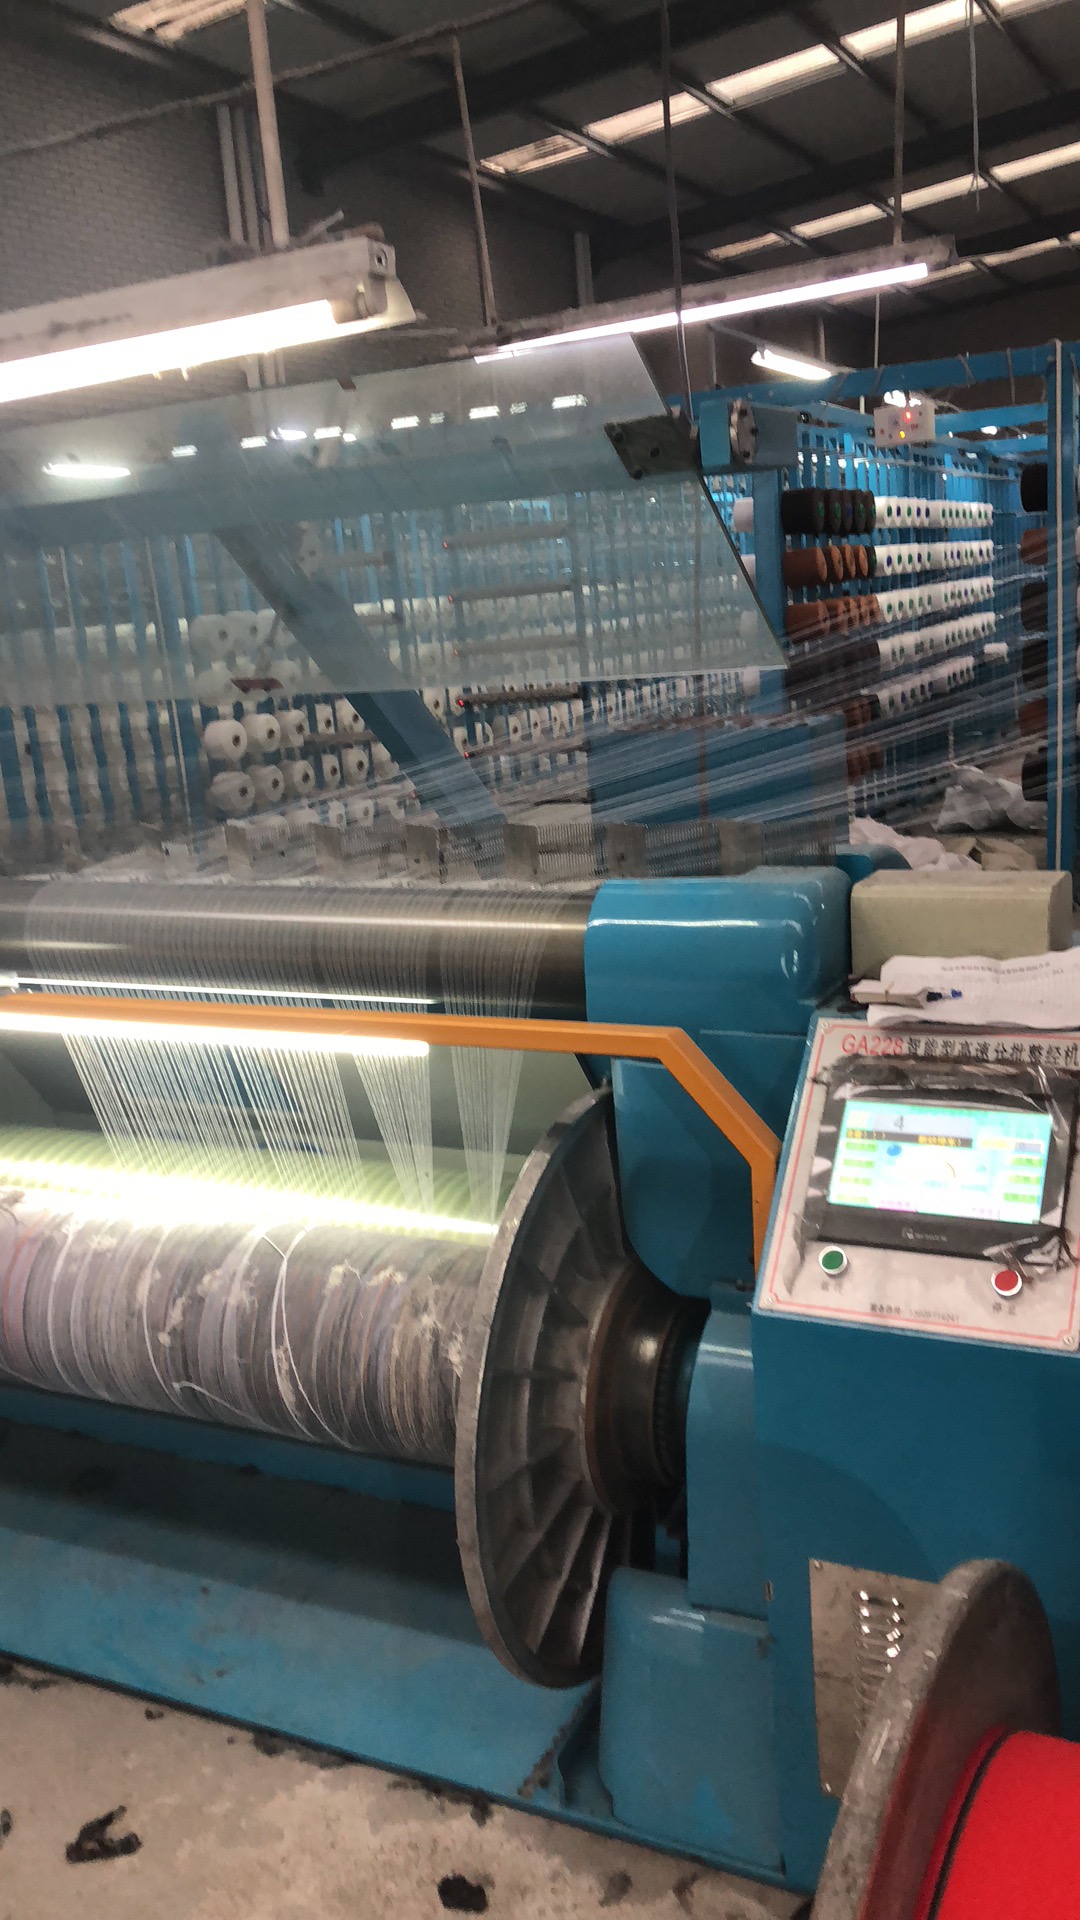 自动化纺织品生产